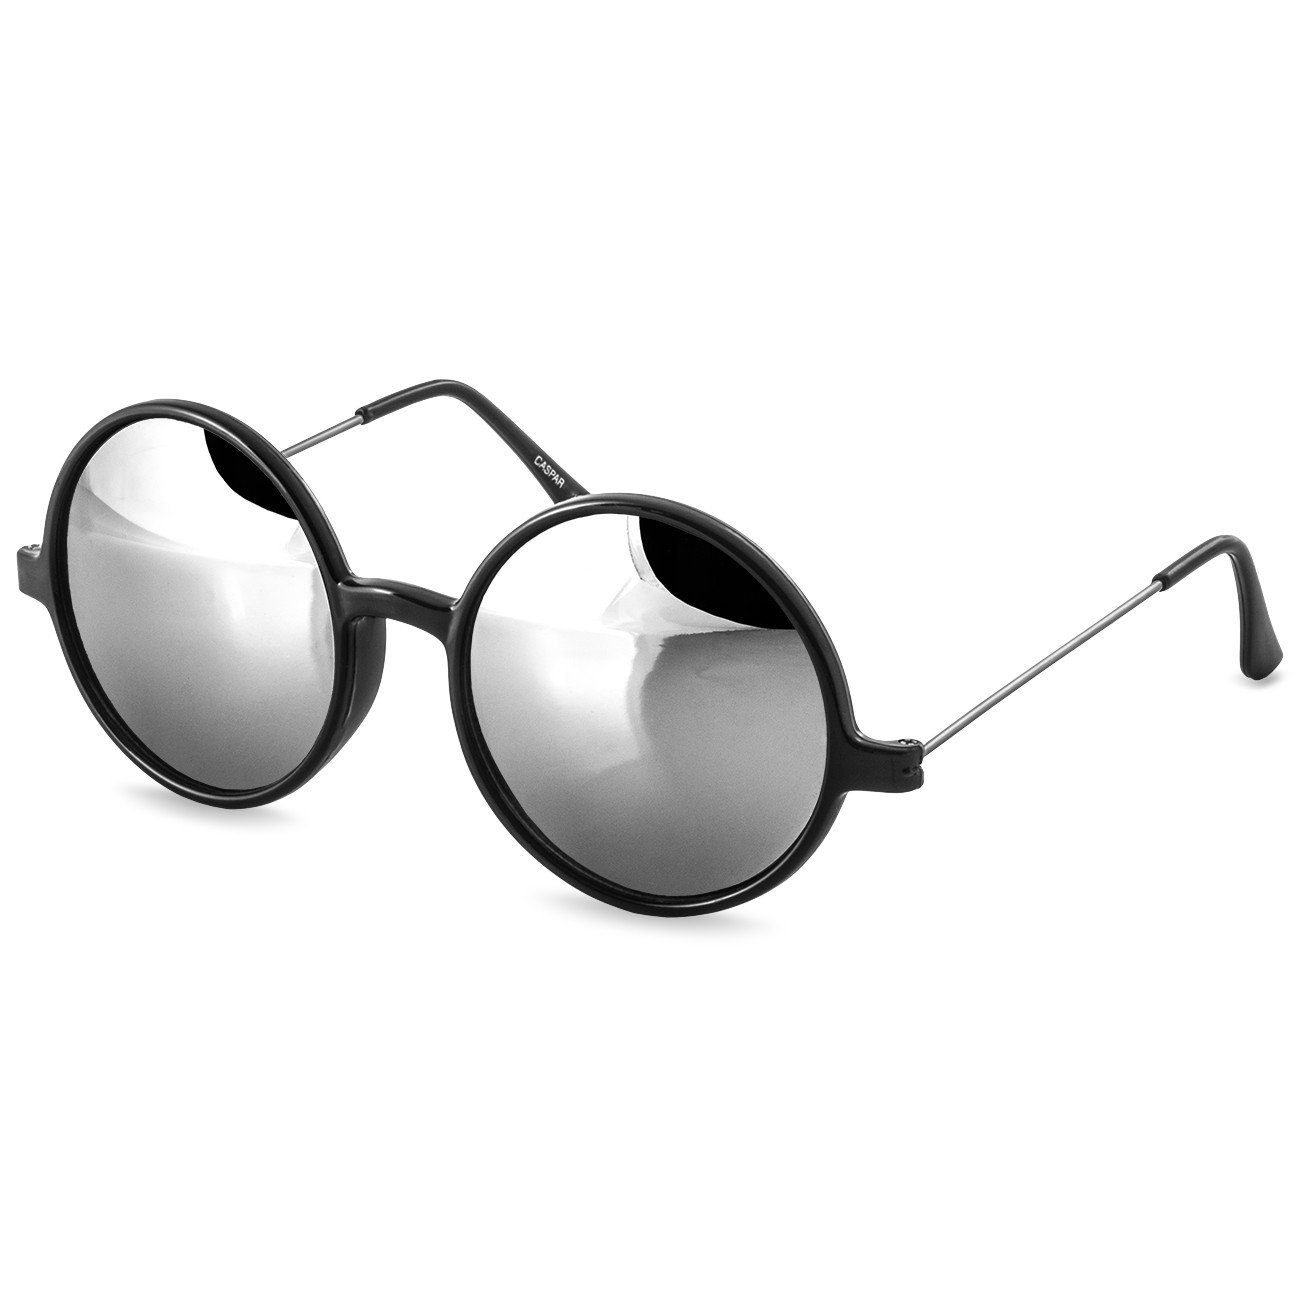 Caspar Sonnenbrille SG021 Unisex Retro XL Nickelbrille mit runden Gläsern bunt verspiegelt